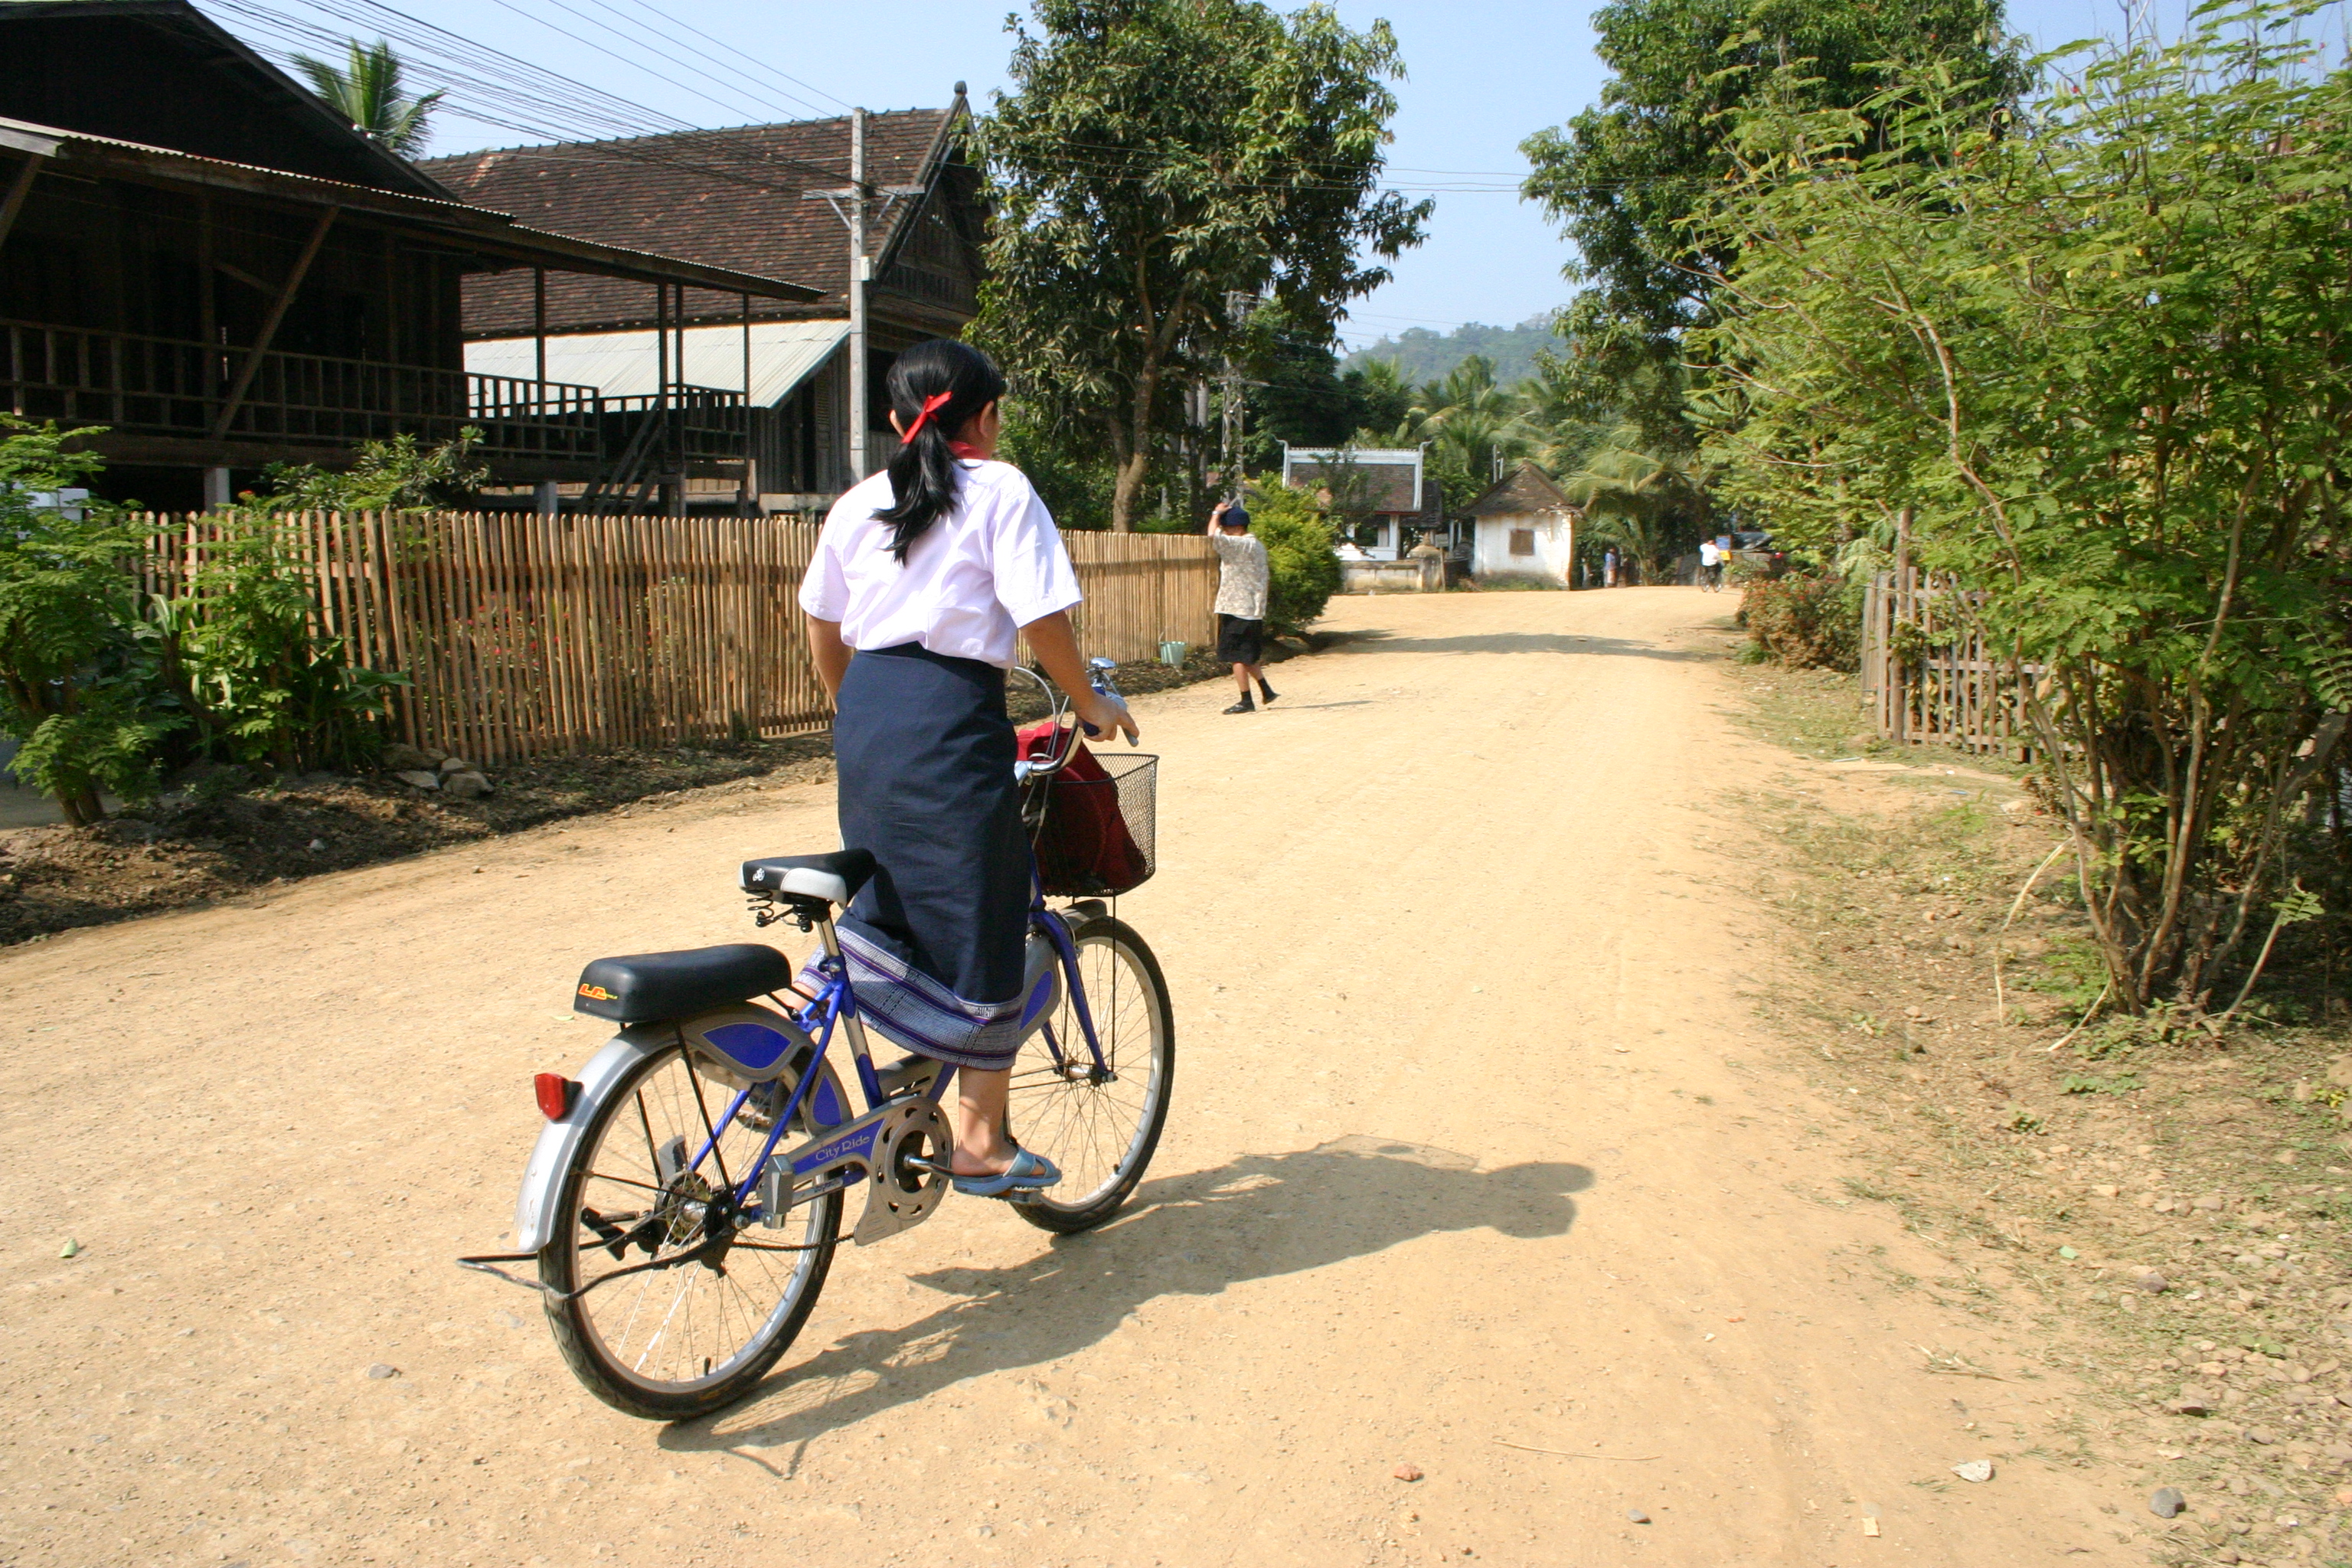 Image of Lao school girl on bicycle